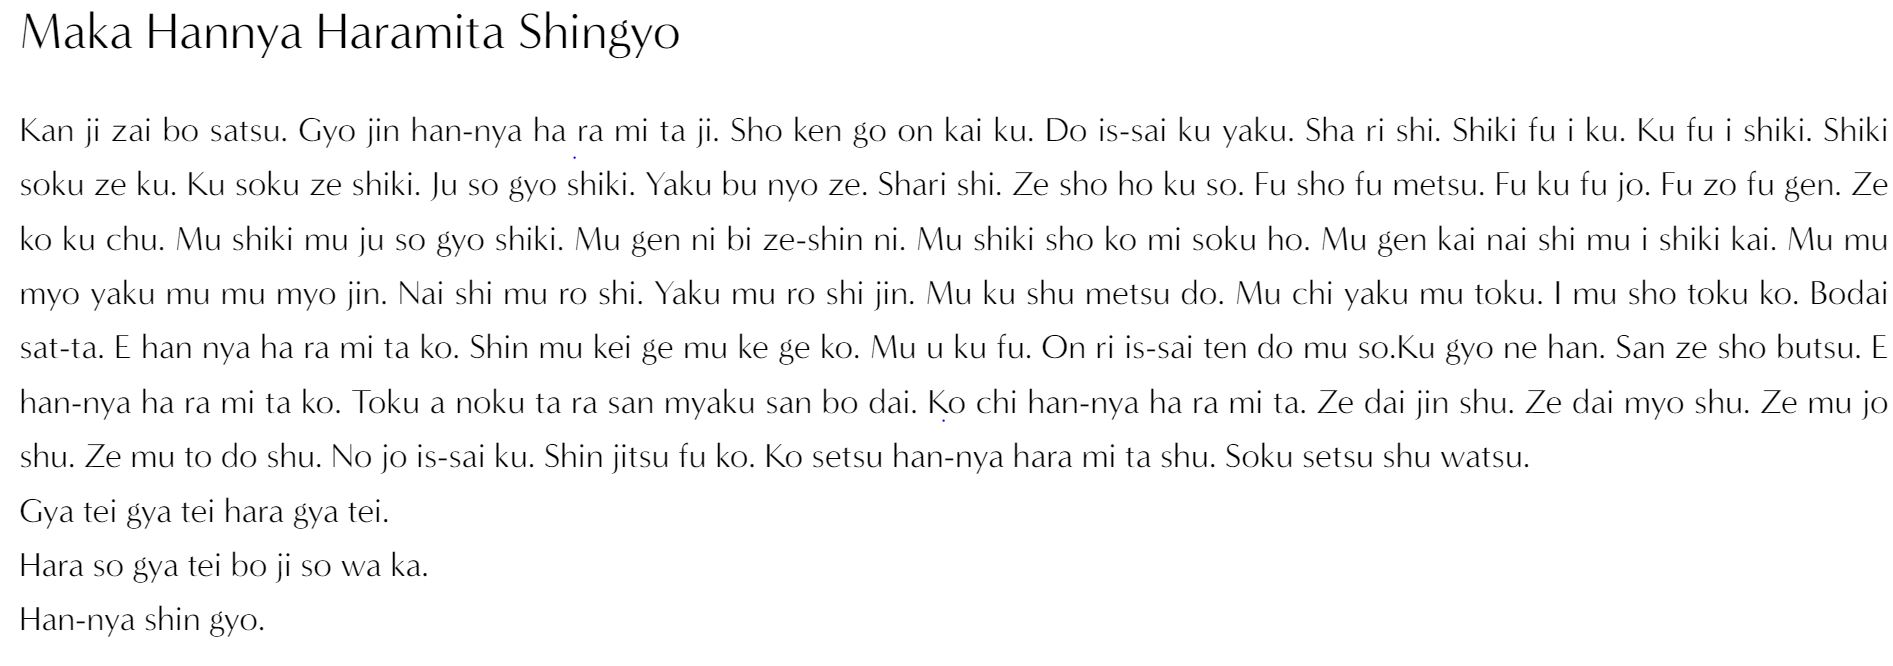 Texte de l' hannya shingyo en kanbun phonétique